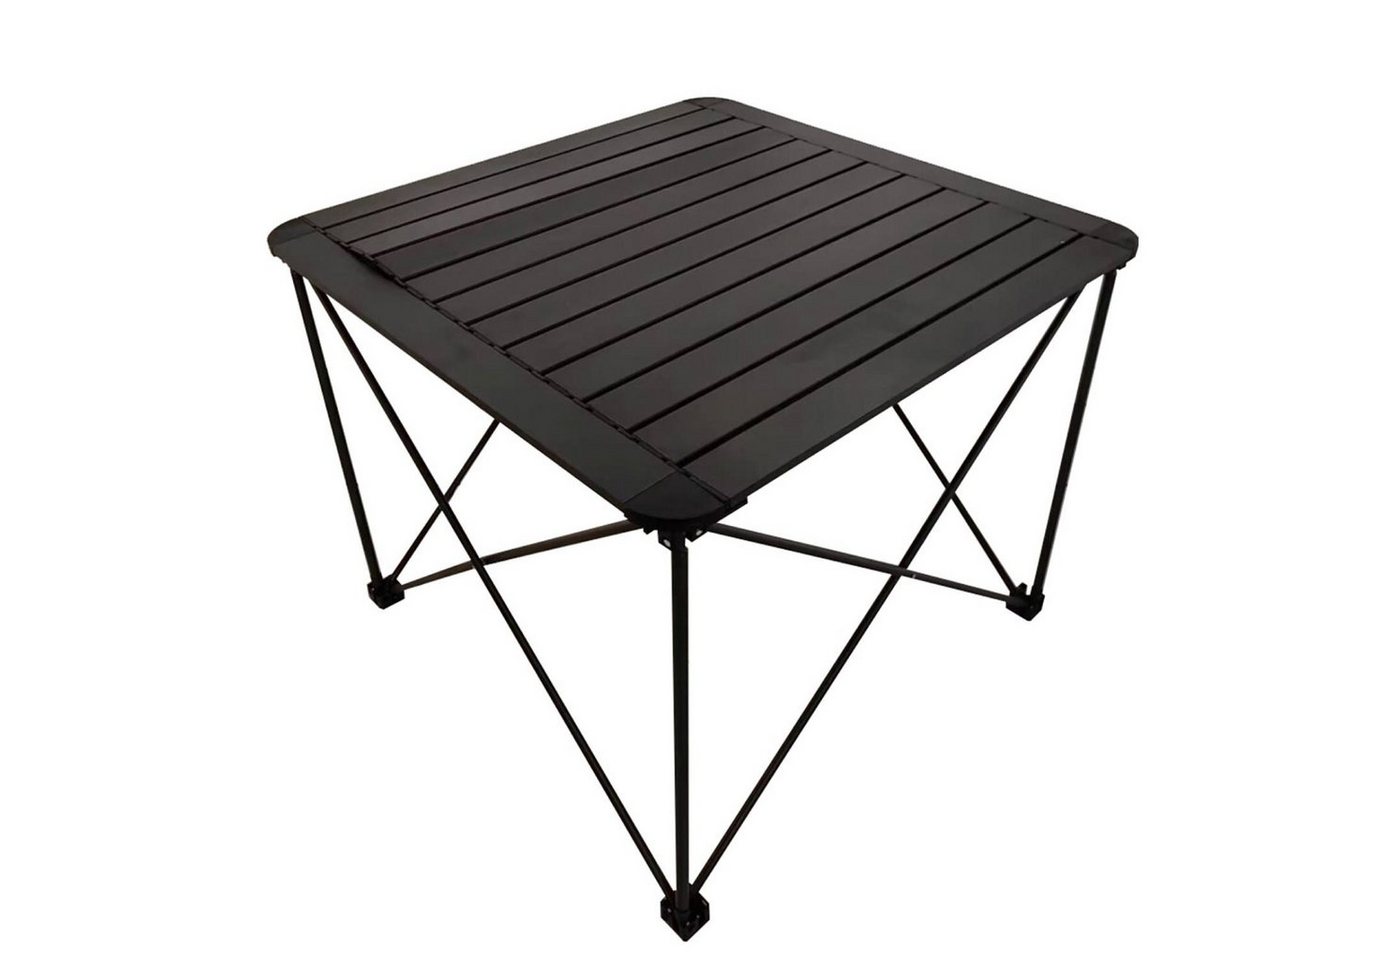 INDA-Exclusiv Campingtisch Campingtisch Klapptisch Gartentisch klappbar mit Tasche 70x70x56cm von INDA-Exclusiv